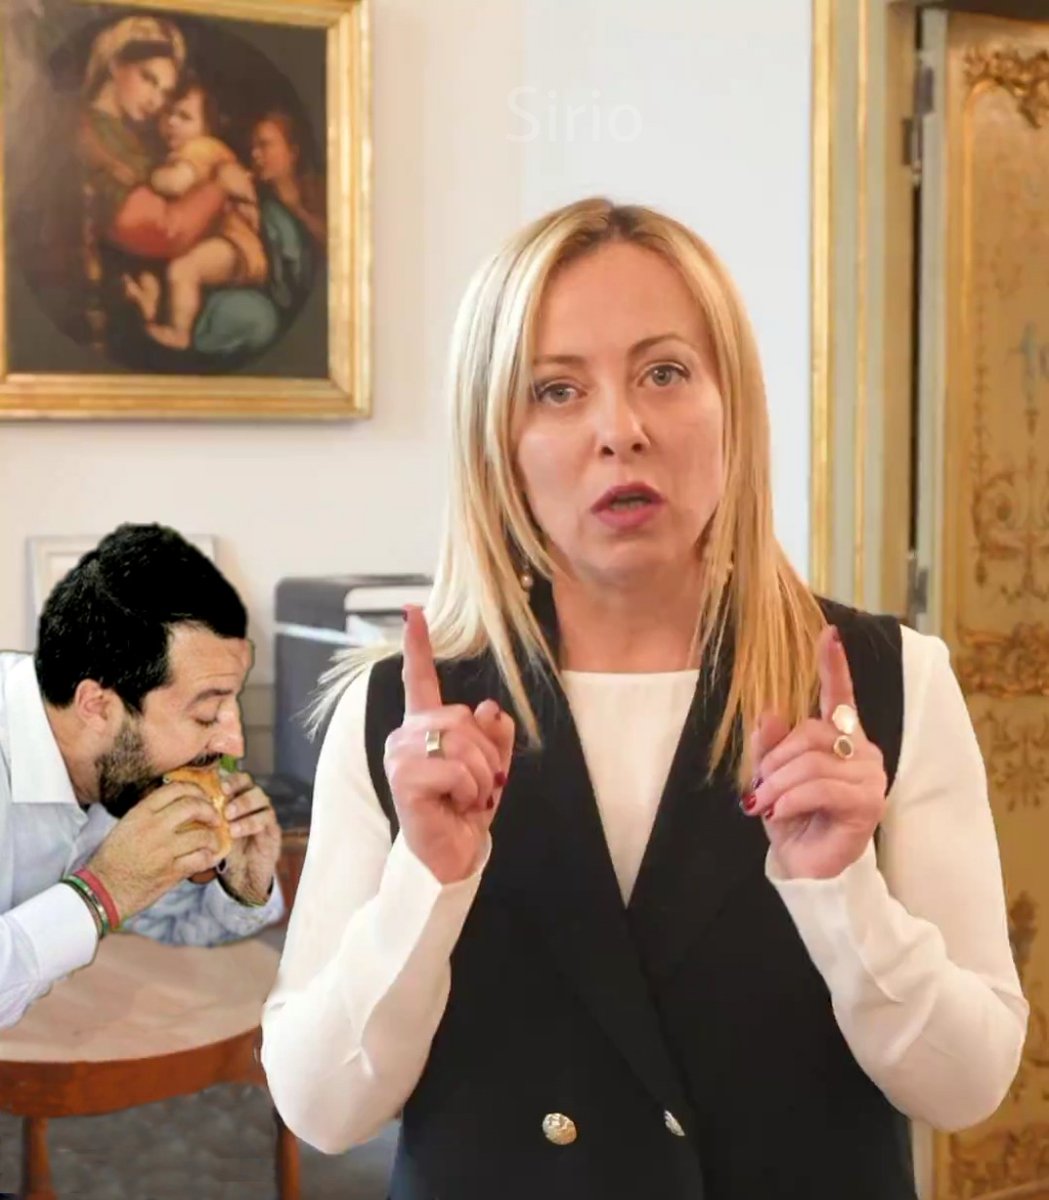 nel piano sequenza della Meloni tra le stanze di Palazzo Chigi mi sembra di aver visto anche Salvini...
#GiorgiaMeloni #decretolavoro #GovernoMeloni #Primomaggio #2maggio